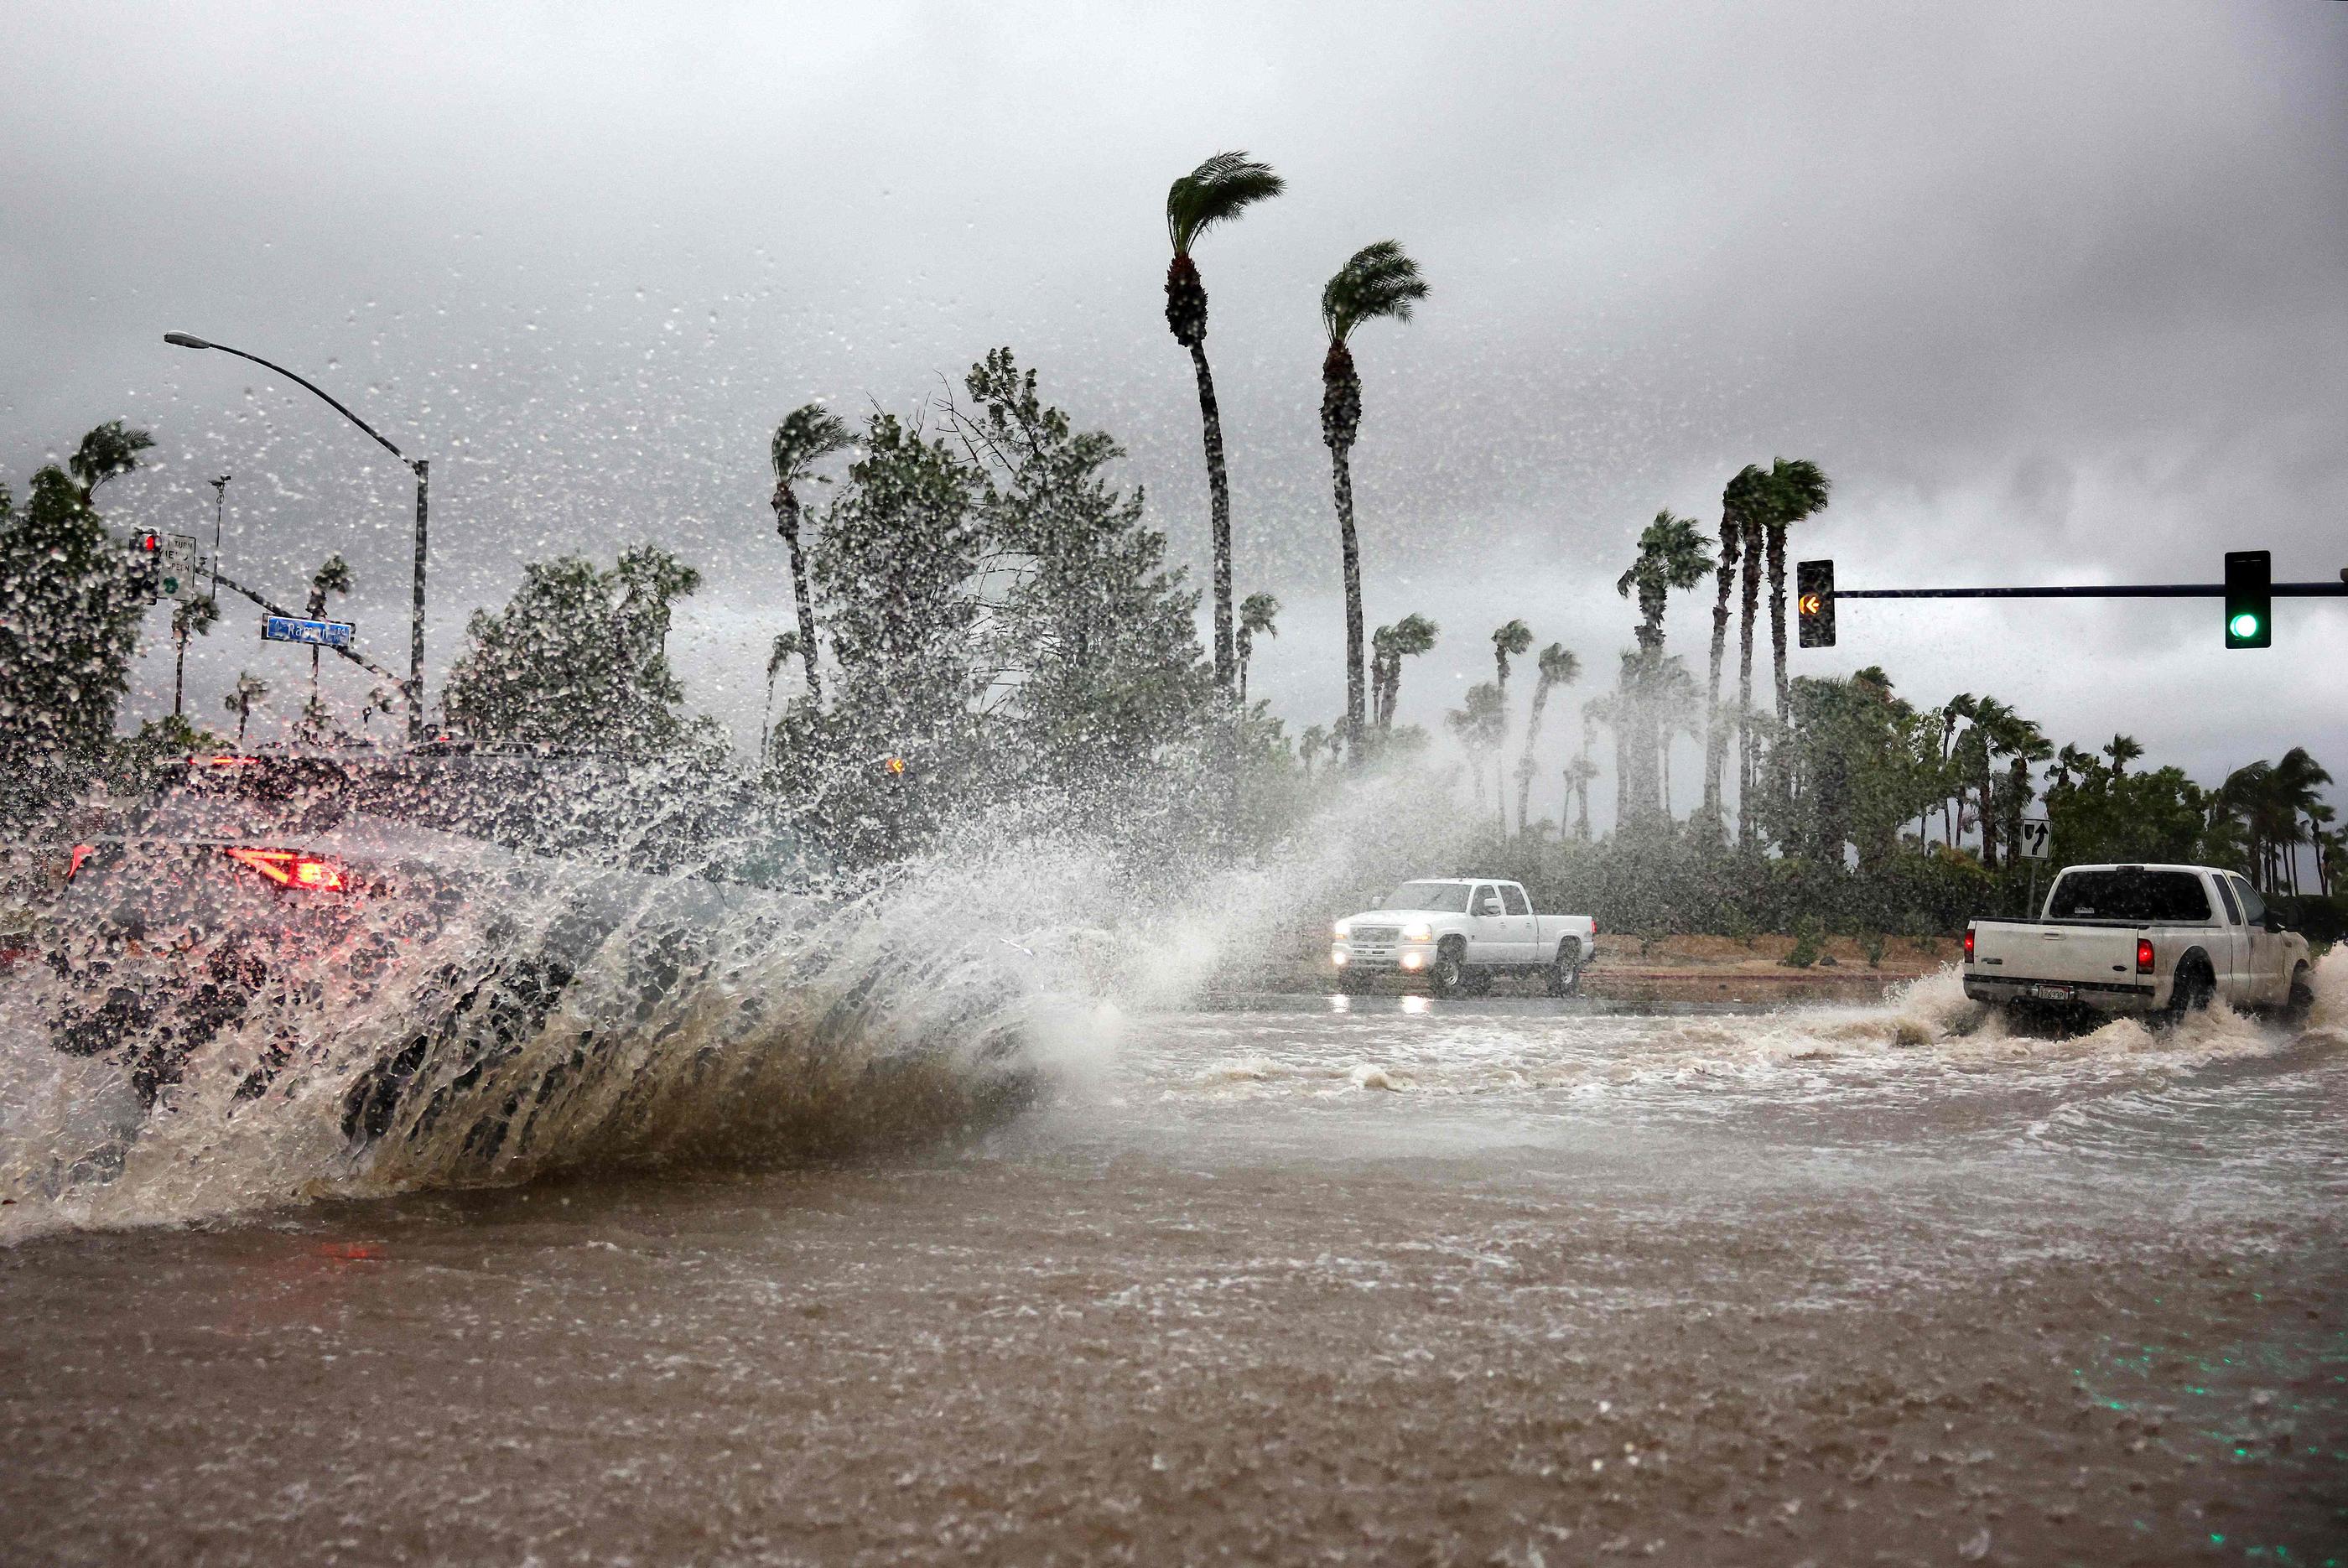 La Californie est touchée par la tempête tropicale Hilary, avec le risque de crues éclair potentiellement mortelles. AFP / Mario Tama / Getty Images